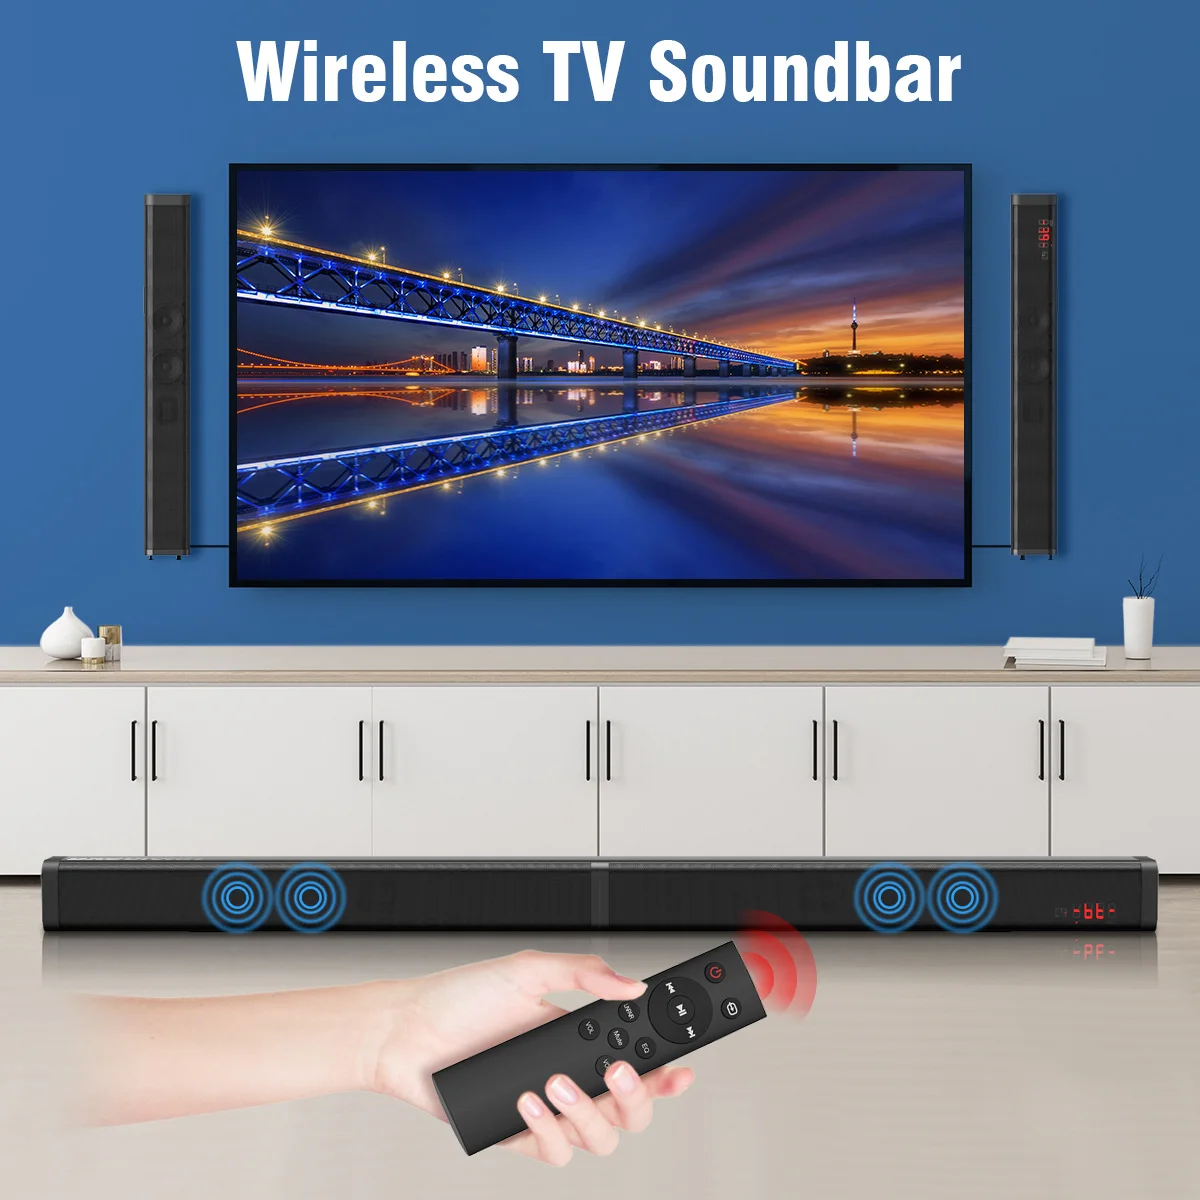 Excelvan 40 Вт Съемный беспроводной Саундбар встроенный сабвуфер AUX кабель USB вход пульт дистанционного управления для ТВ ПК планшет смартфон